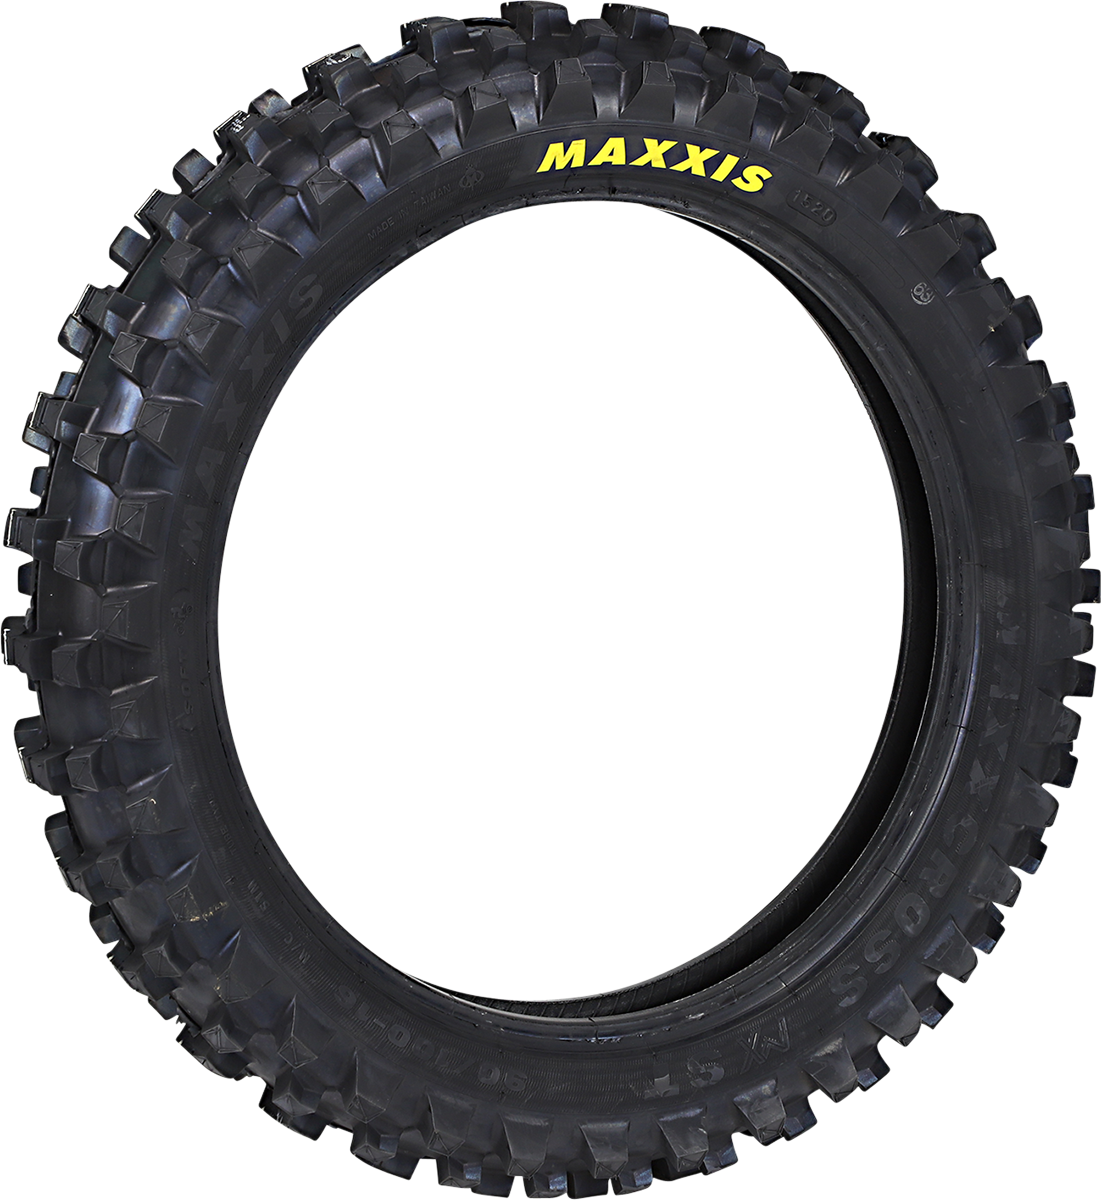 Tire - Maxxcross MX-ST M7332 - Rear - 90/100-16 - 51M